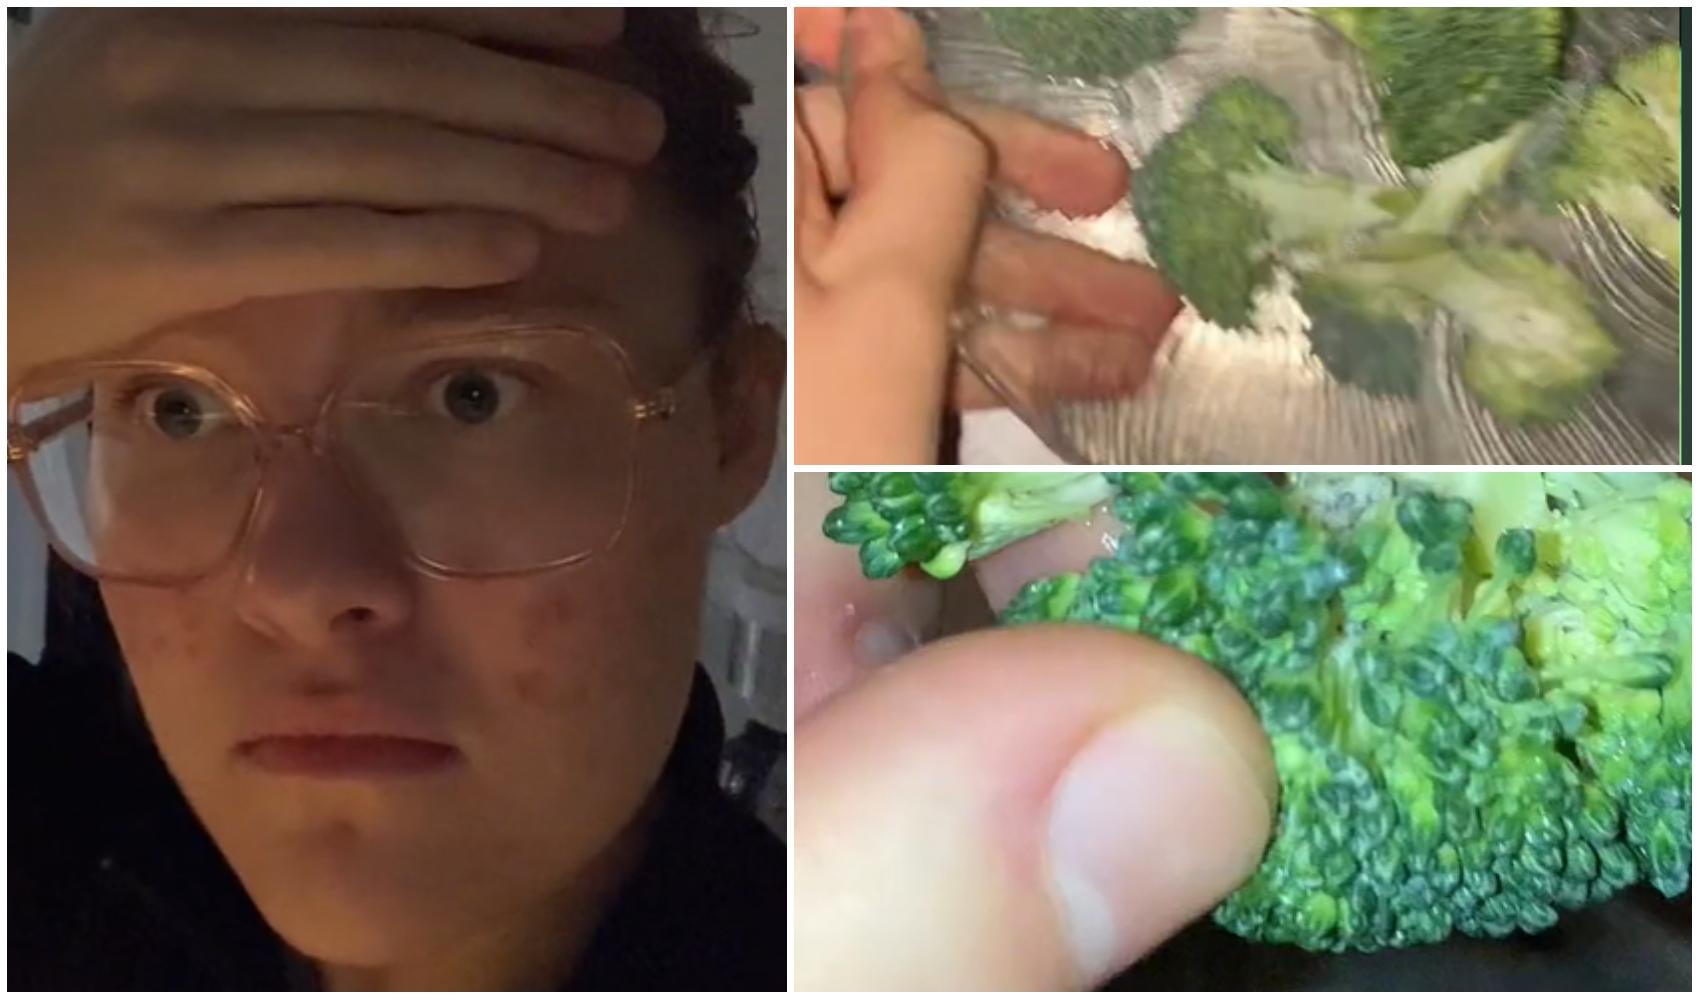 Ce a putut să descopere o tânără într-o bucată de broccoli! A filmat totul și a arătat dovada. Ce se vede în imagini